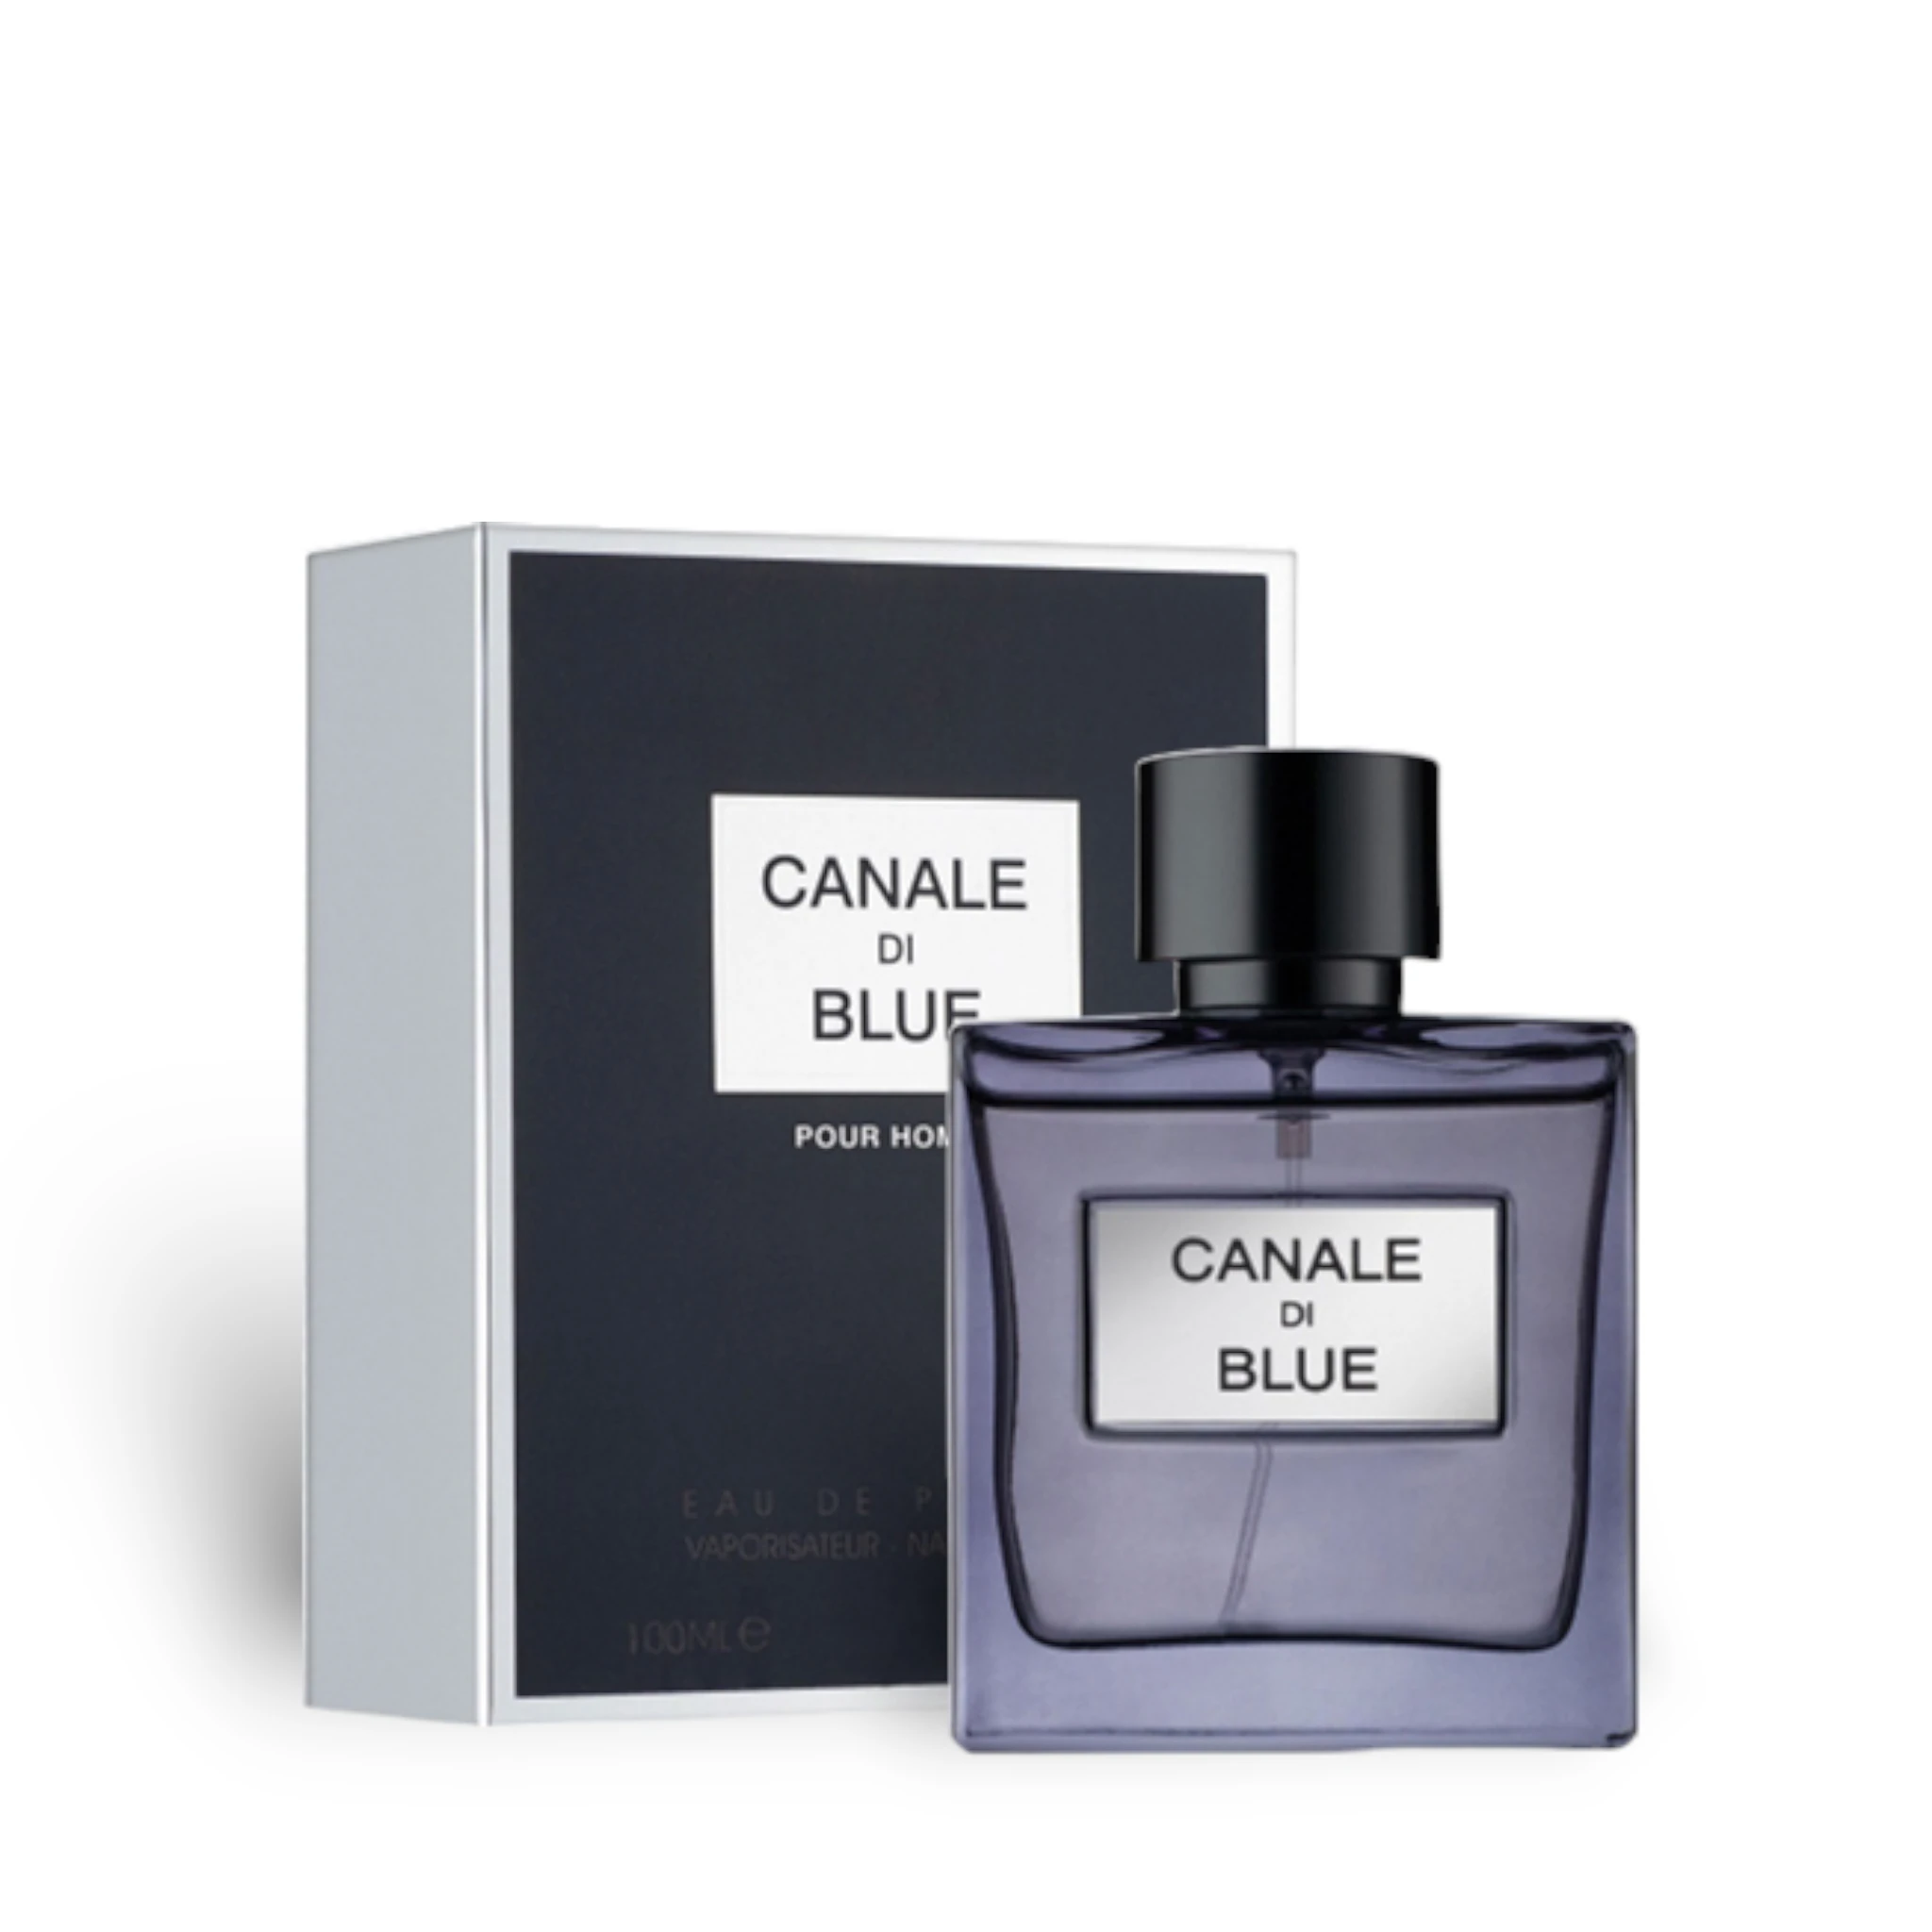 Canale Di Blue Perfume Eau De Parfum 100Ml By Fragrance World